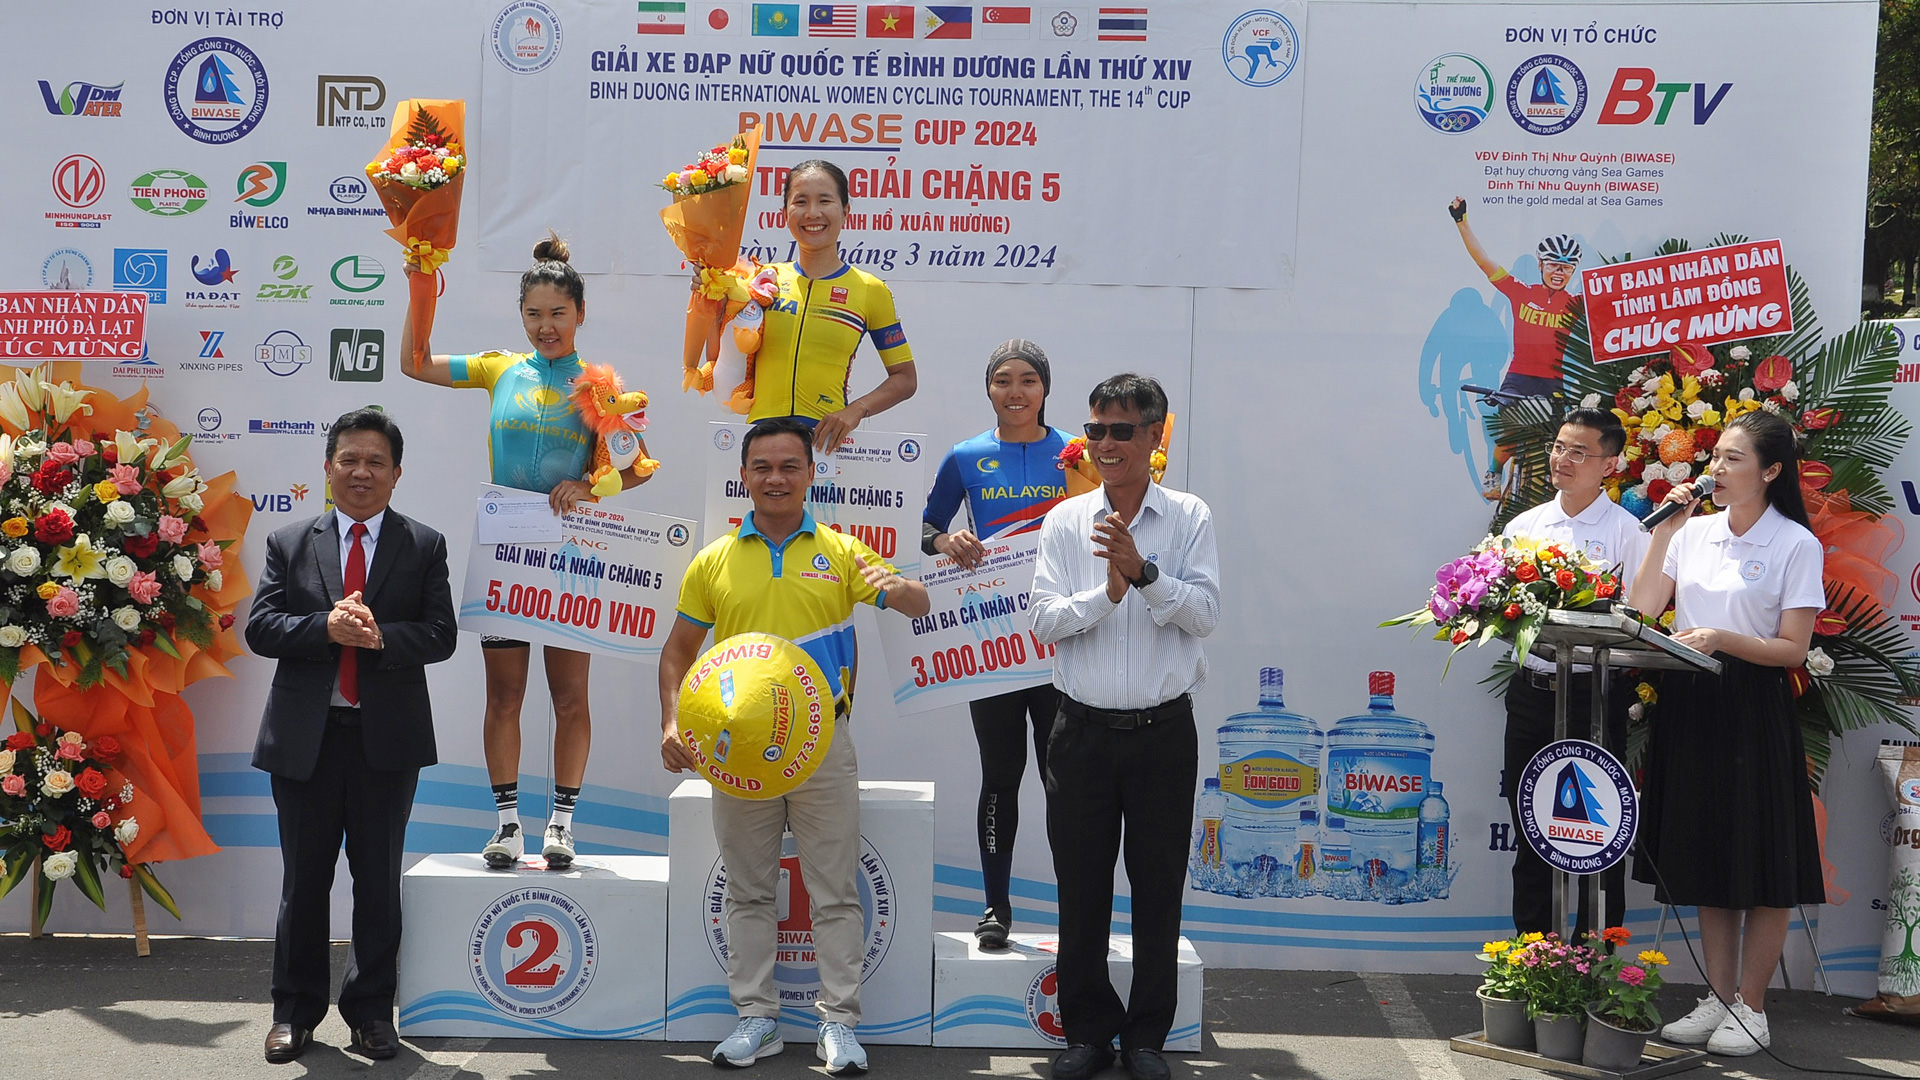 Tay đua Chaniport Batriya đội Thái Lan về đầu Chặng 5 quanh hồ Xuân Hương - Giải đua xe đạp nữ quốc tế Bình Dương 2024